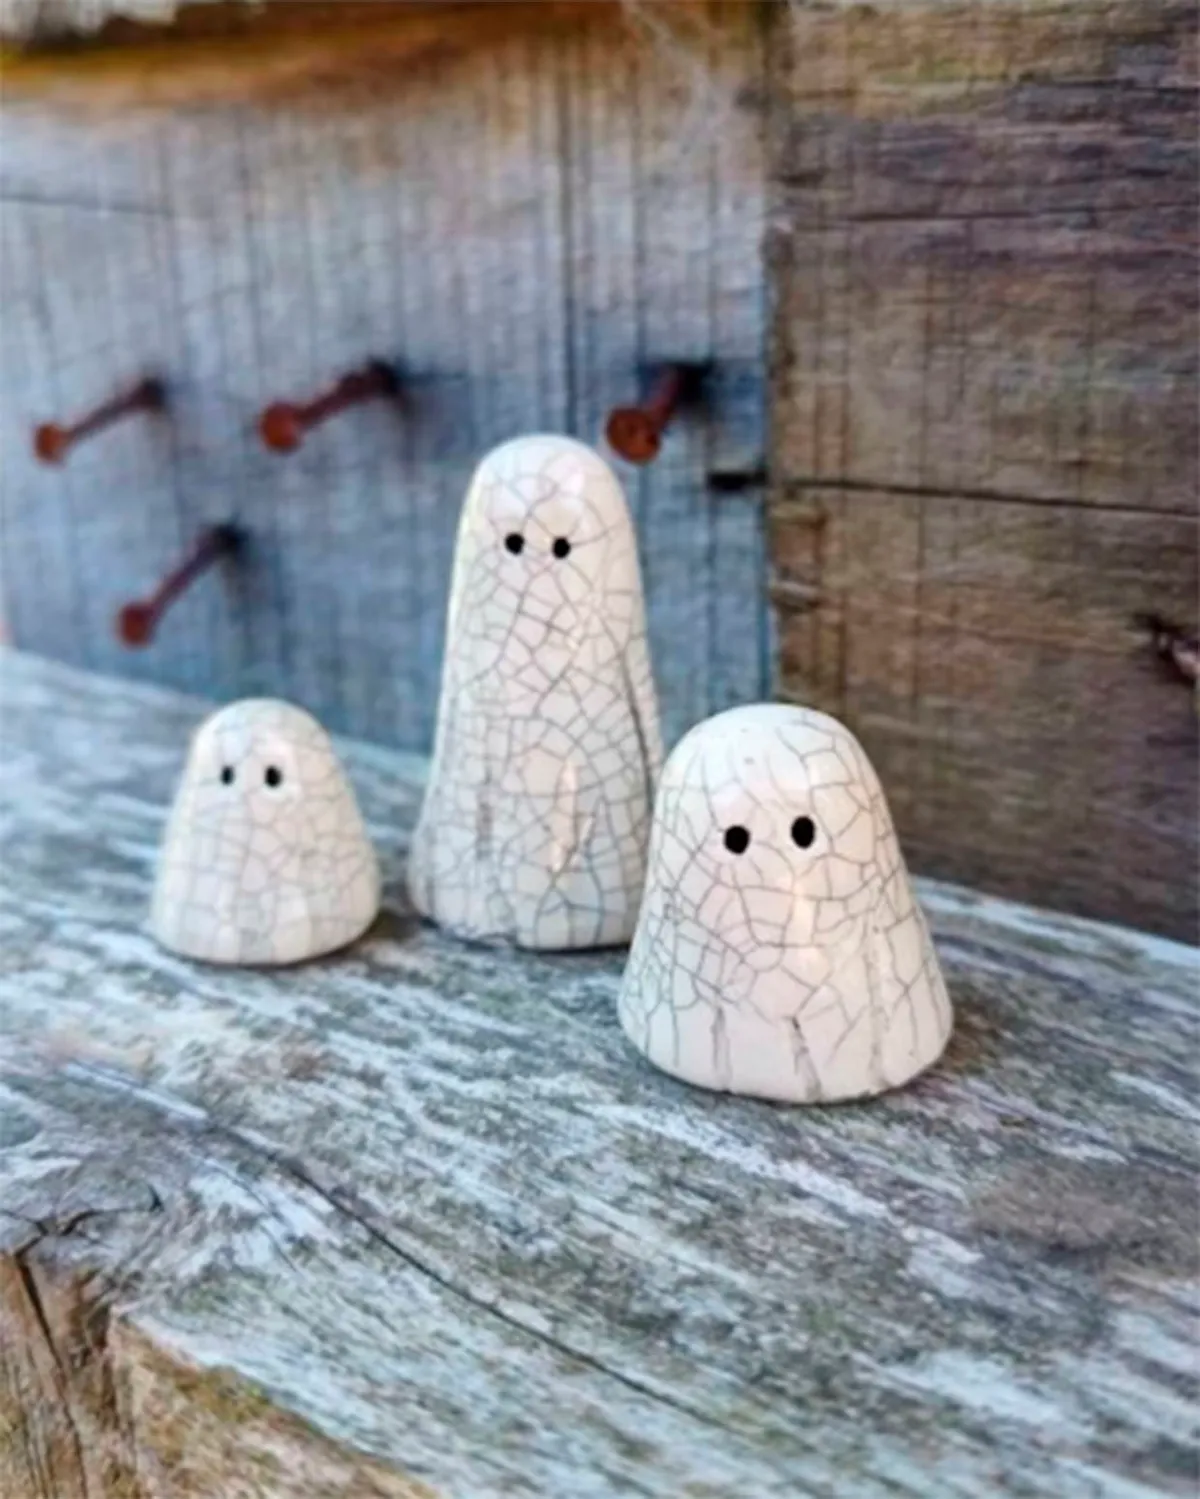 Pocket ghosts